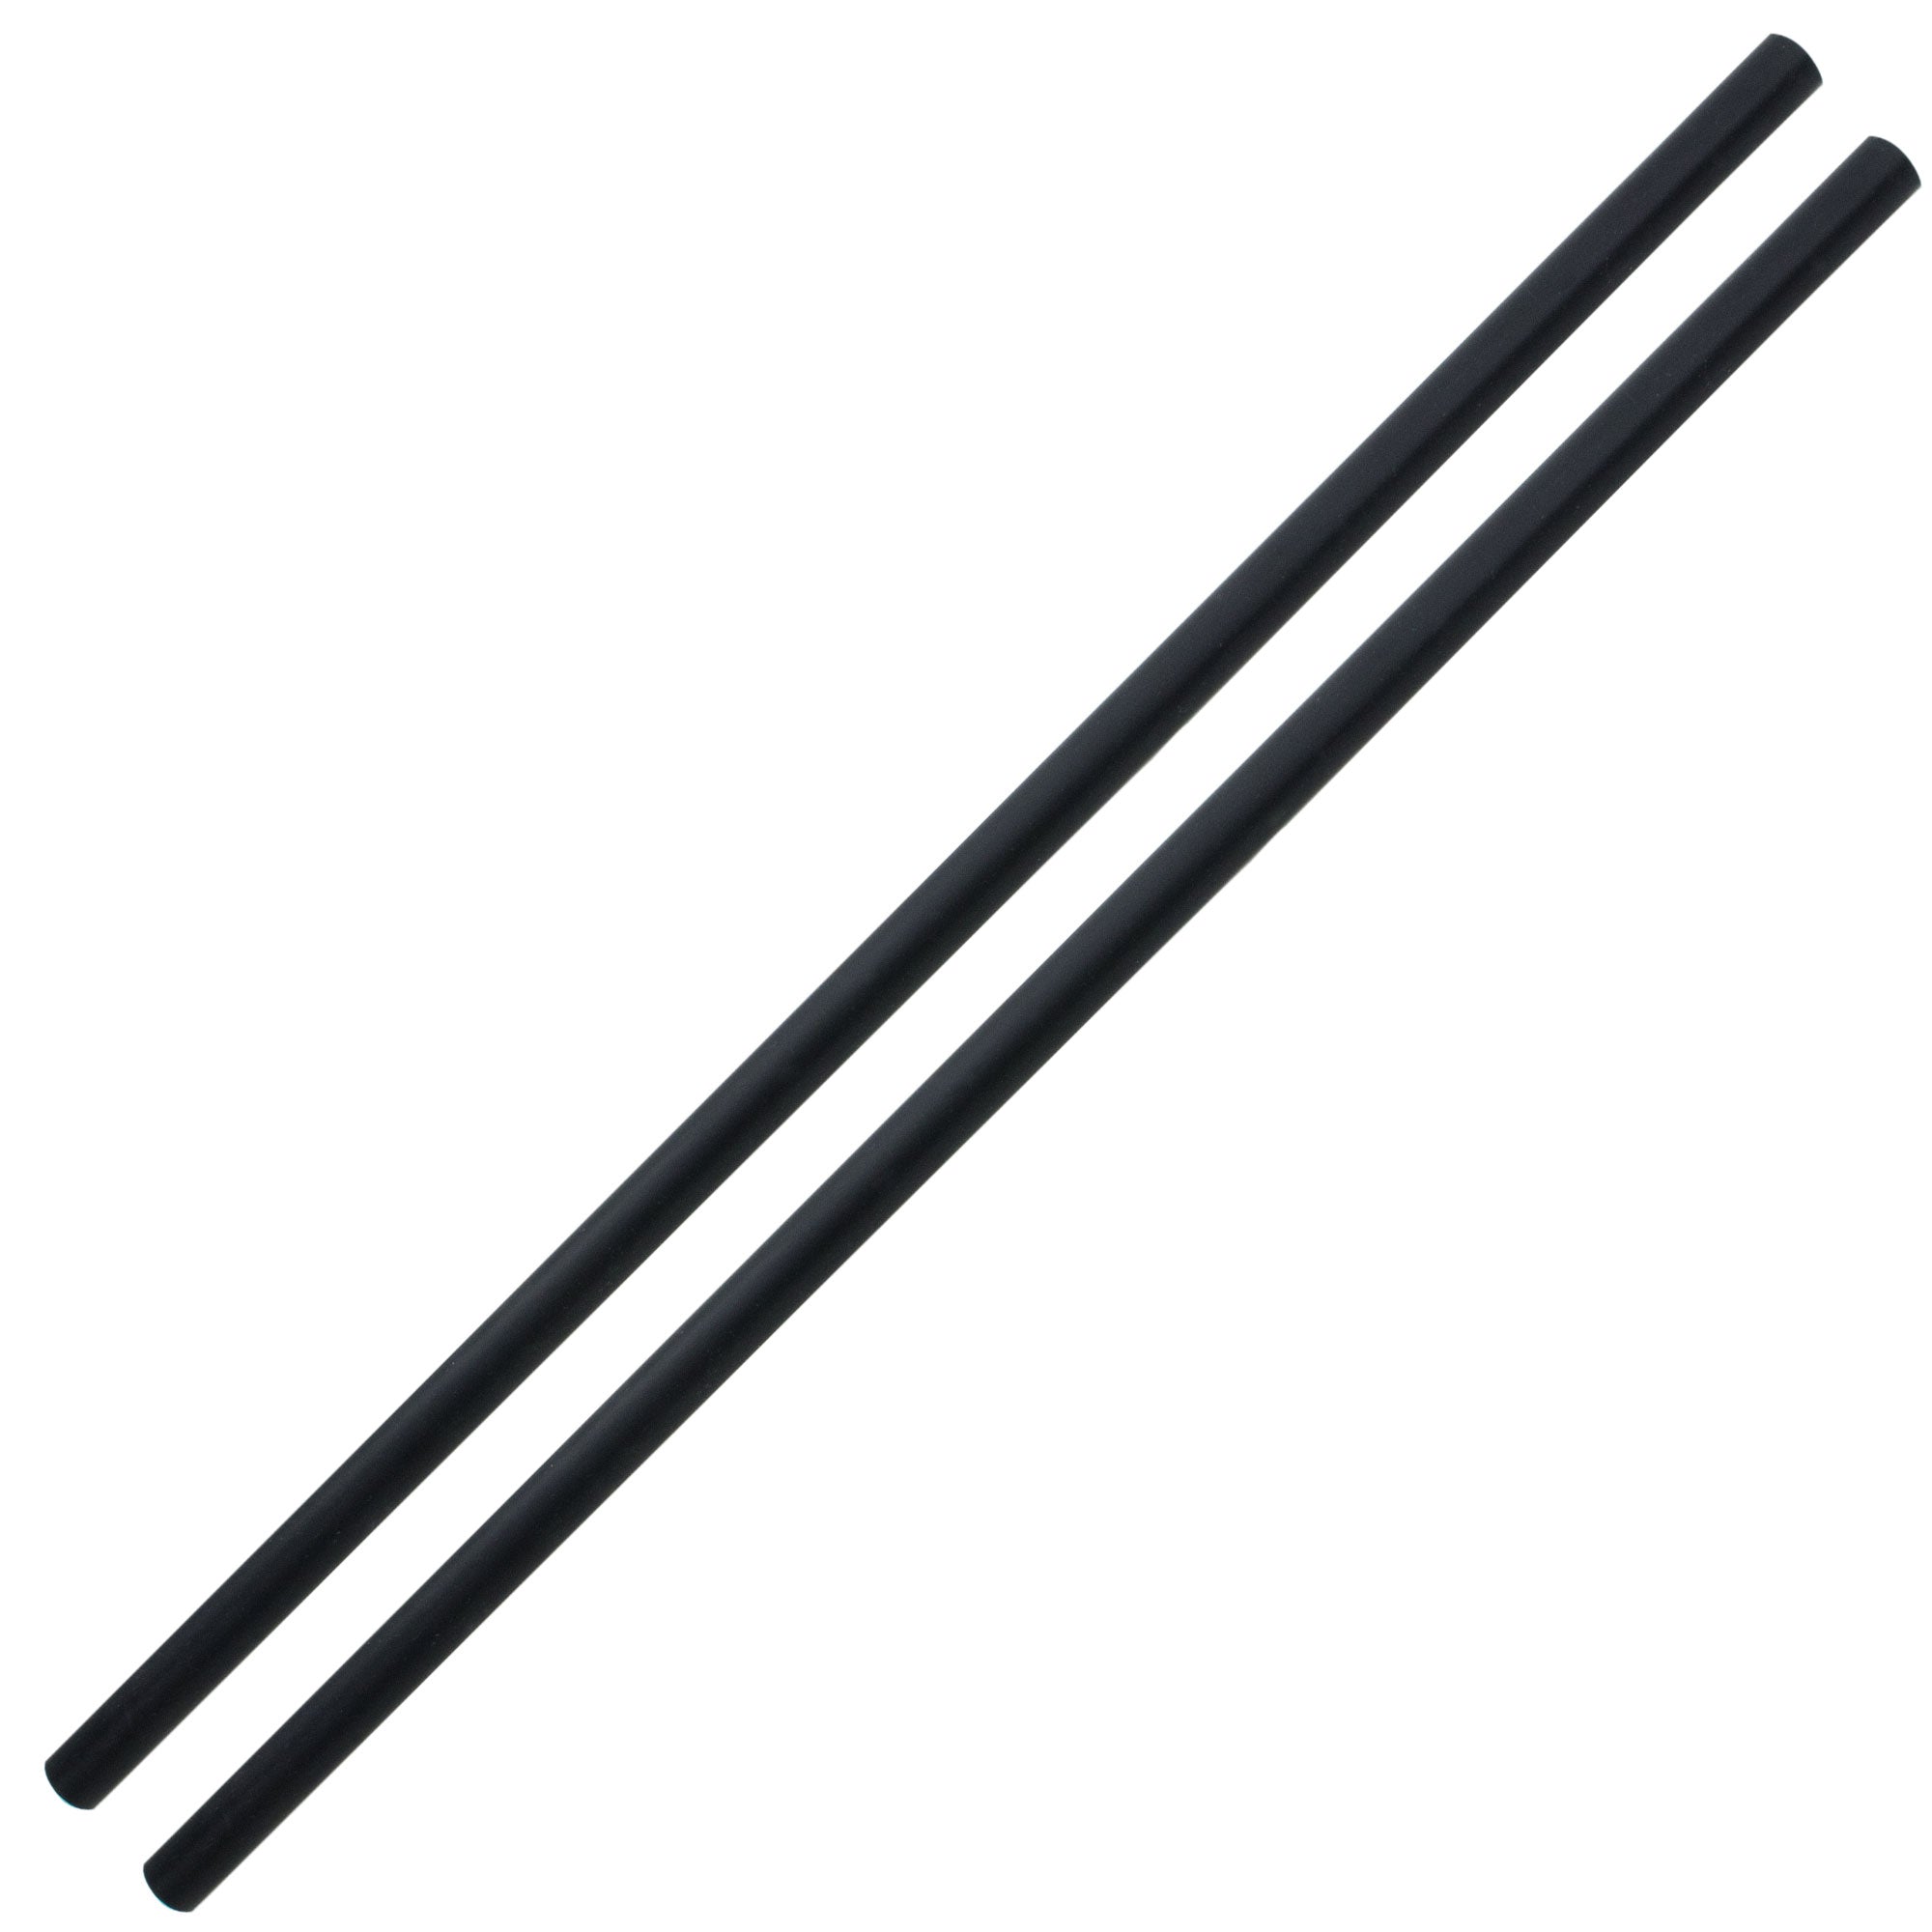 black silicone coated devil stick handsticks